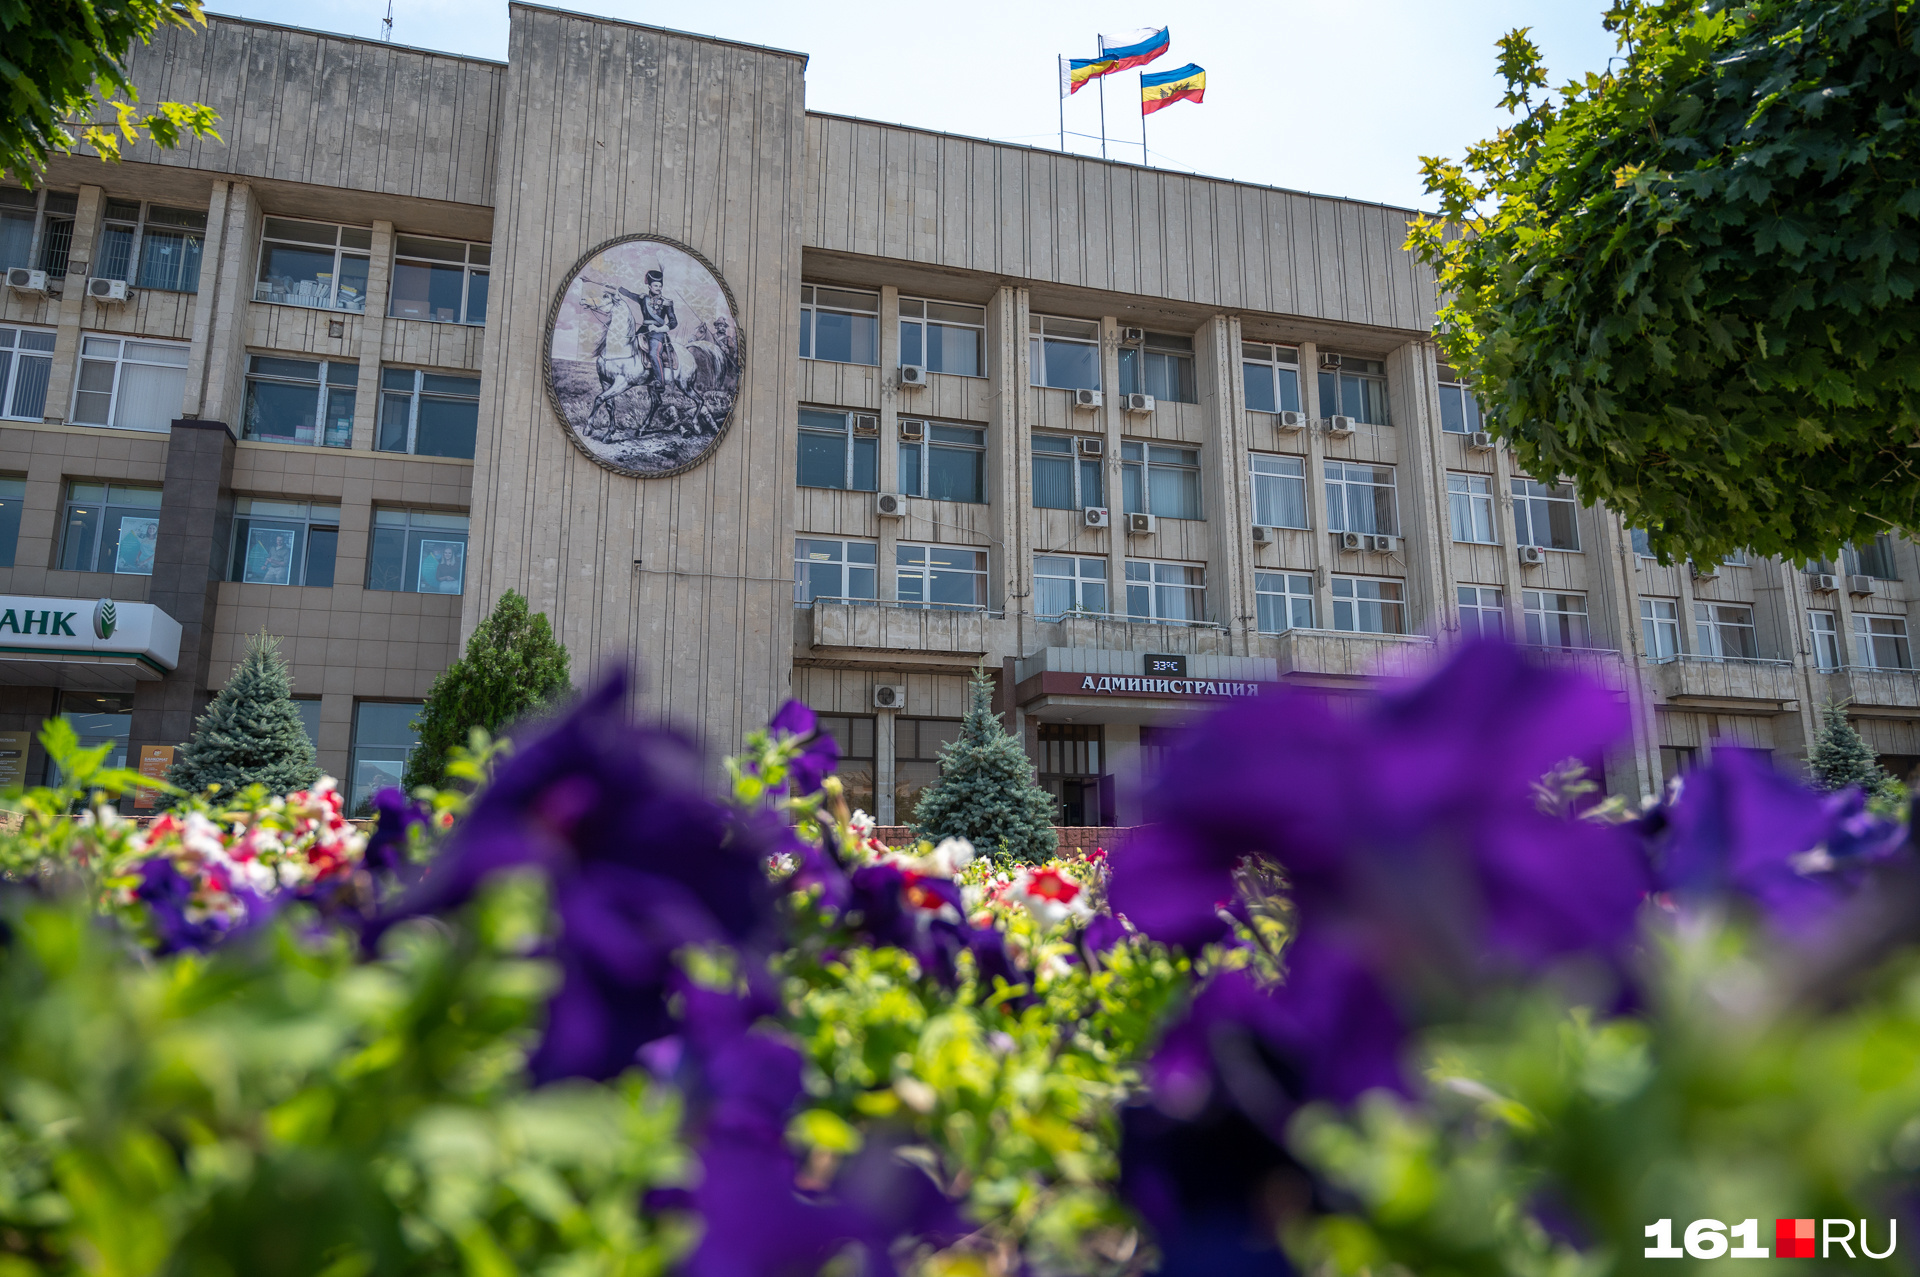 Здание администрации города тоже украшено изображением Матвея Платова